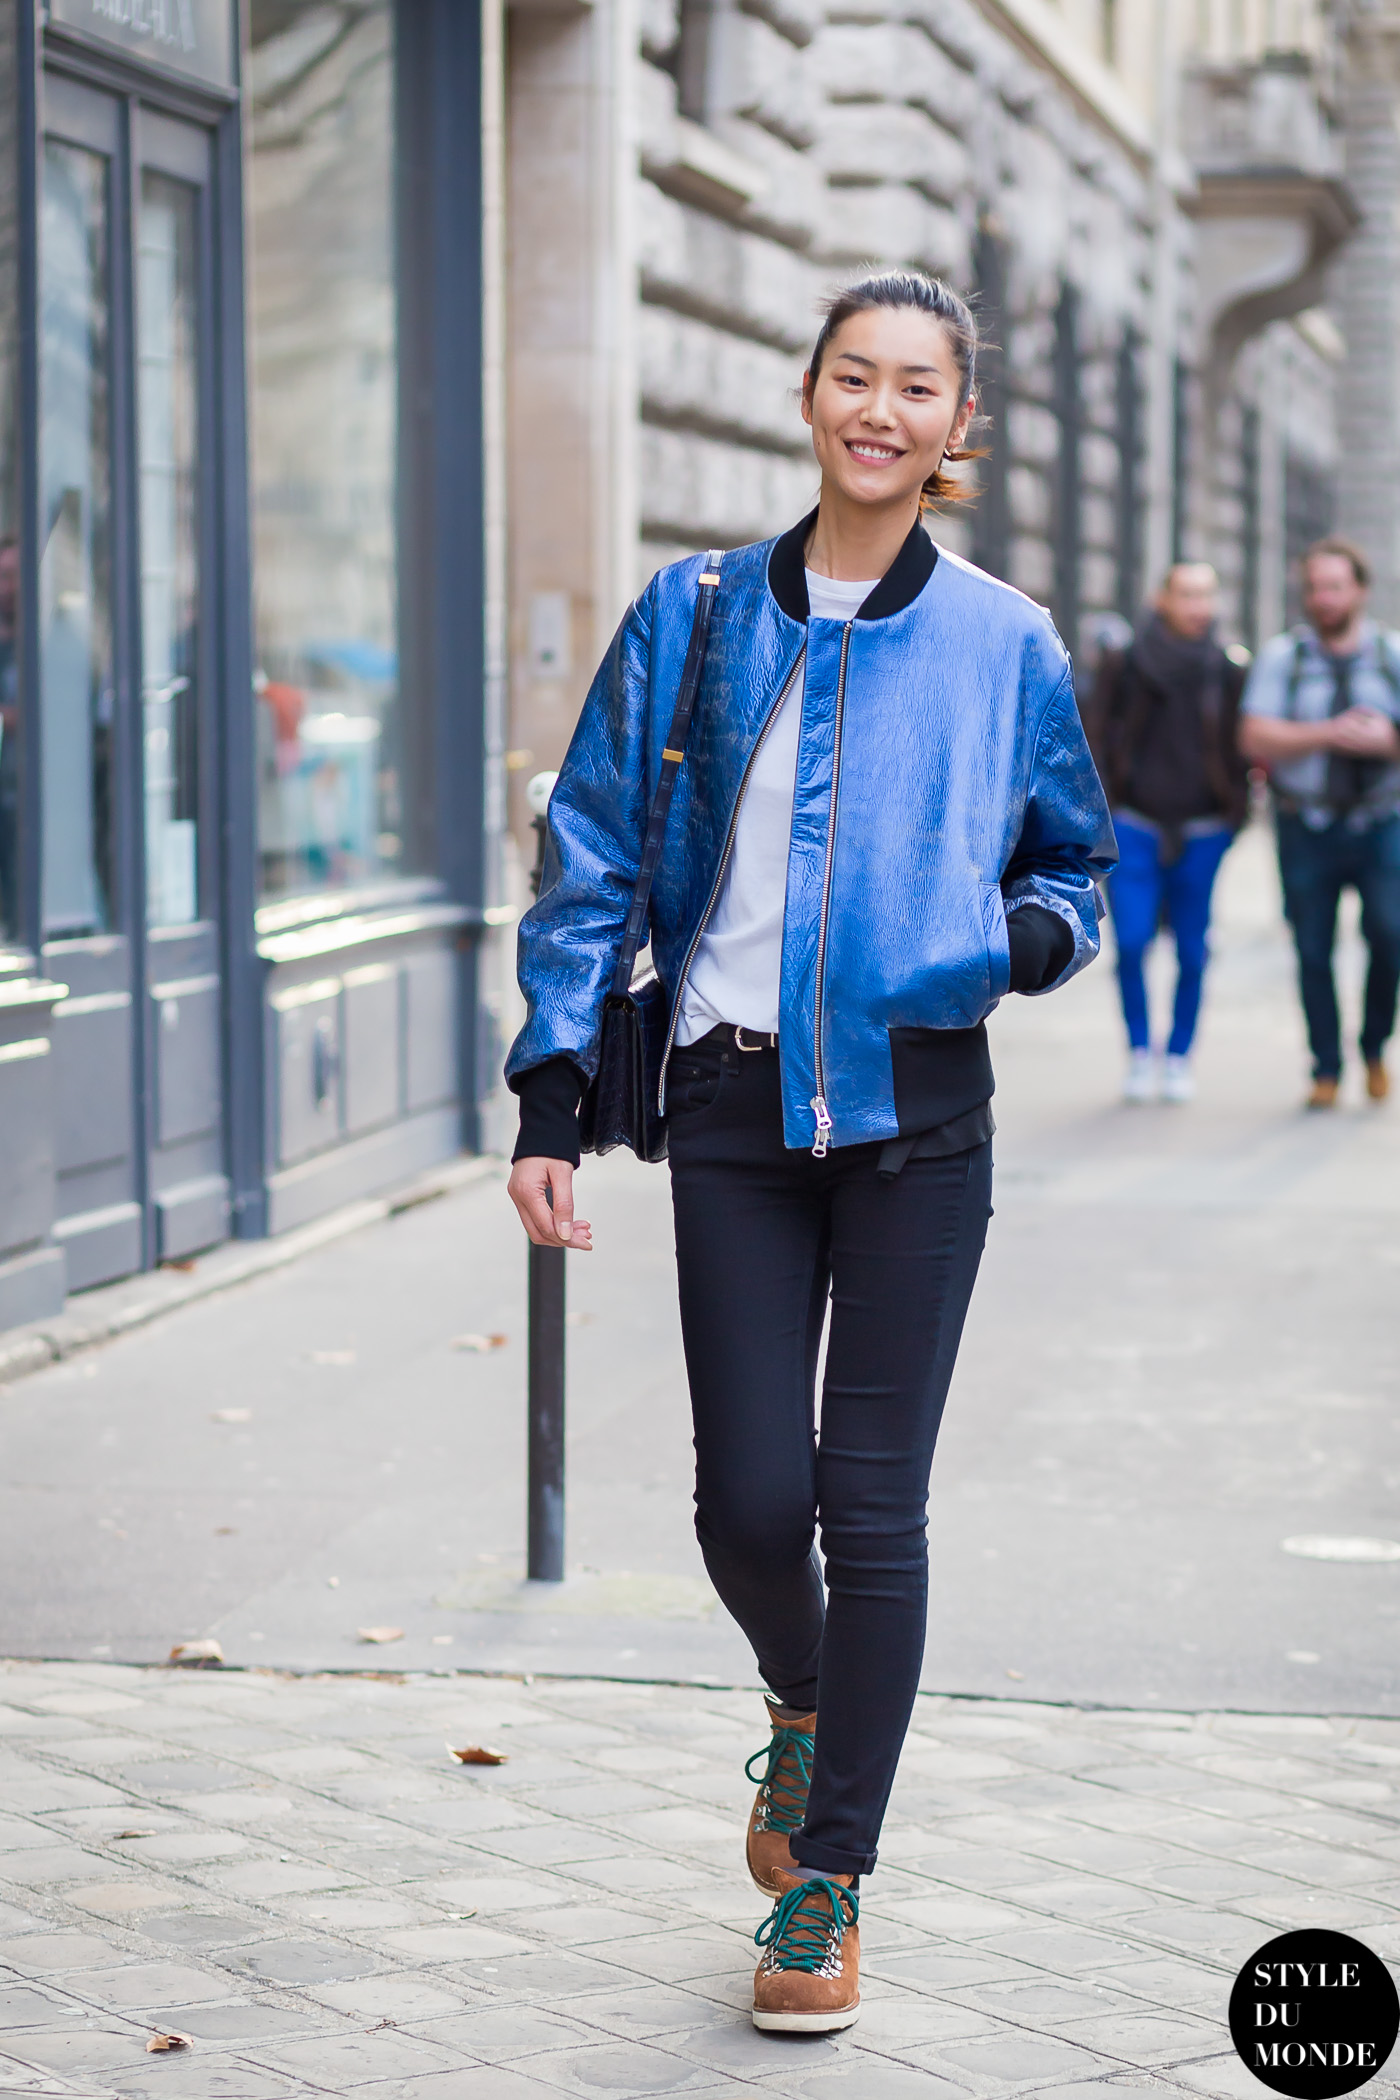 Liu Wen - STYLE DU MONDE | Street Style Street Fashion Photos